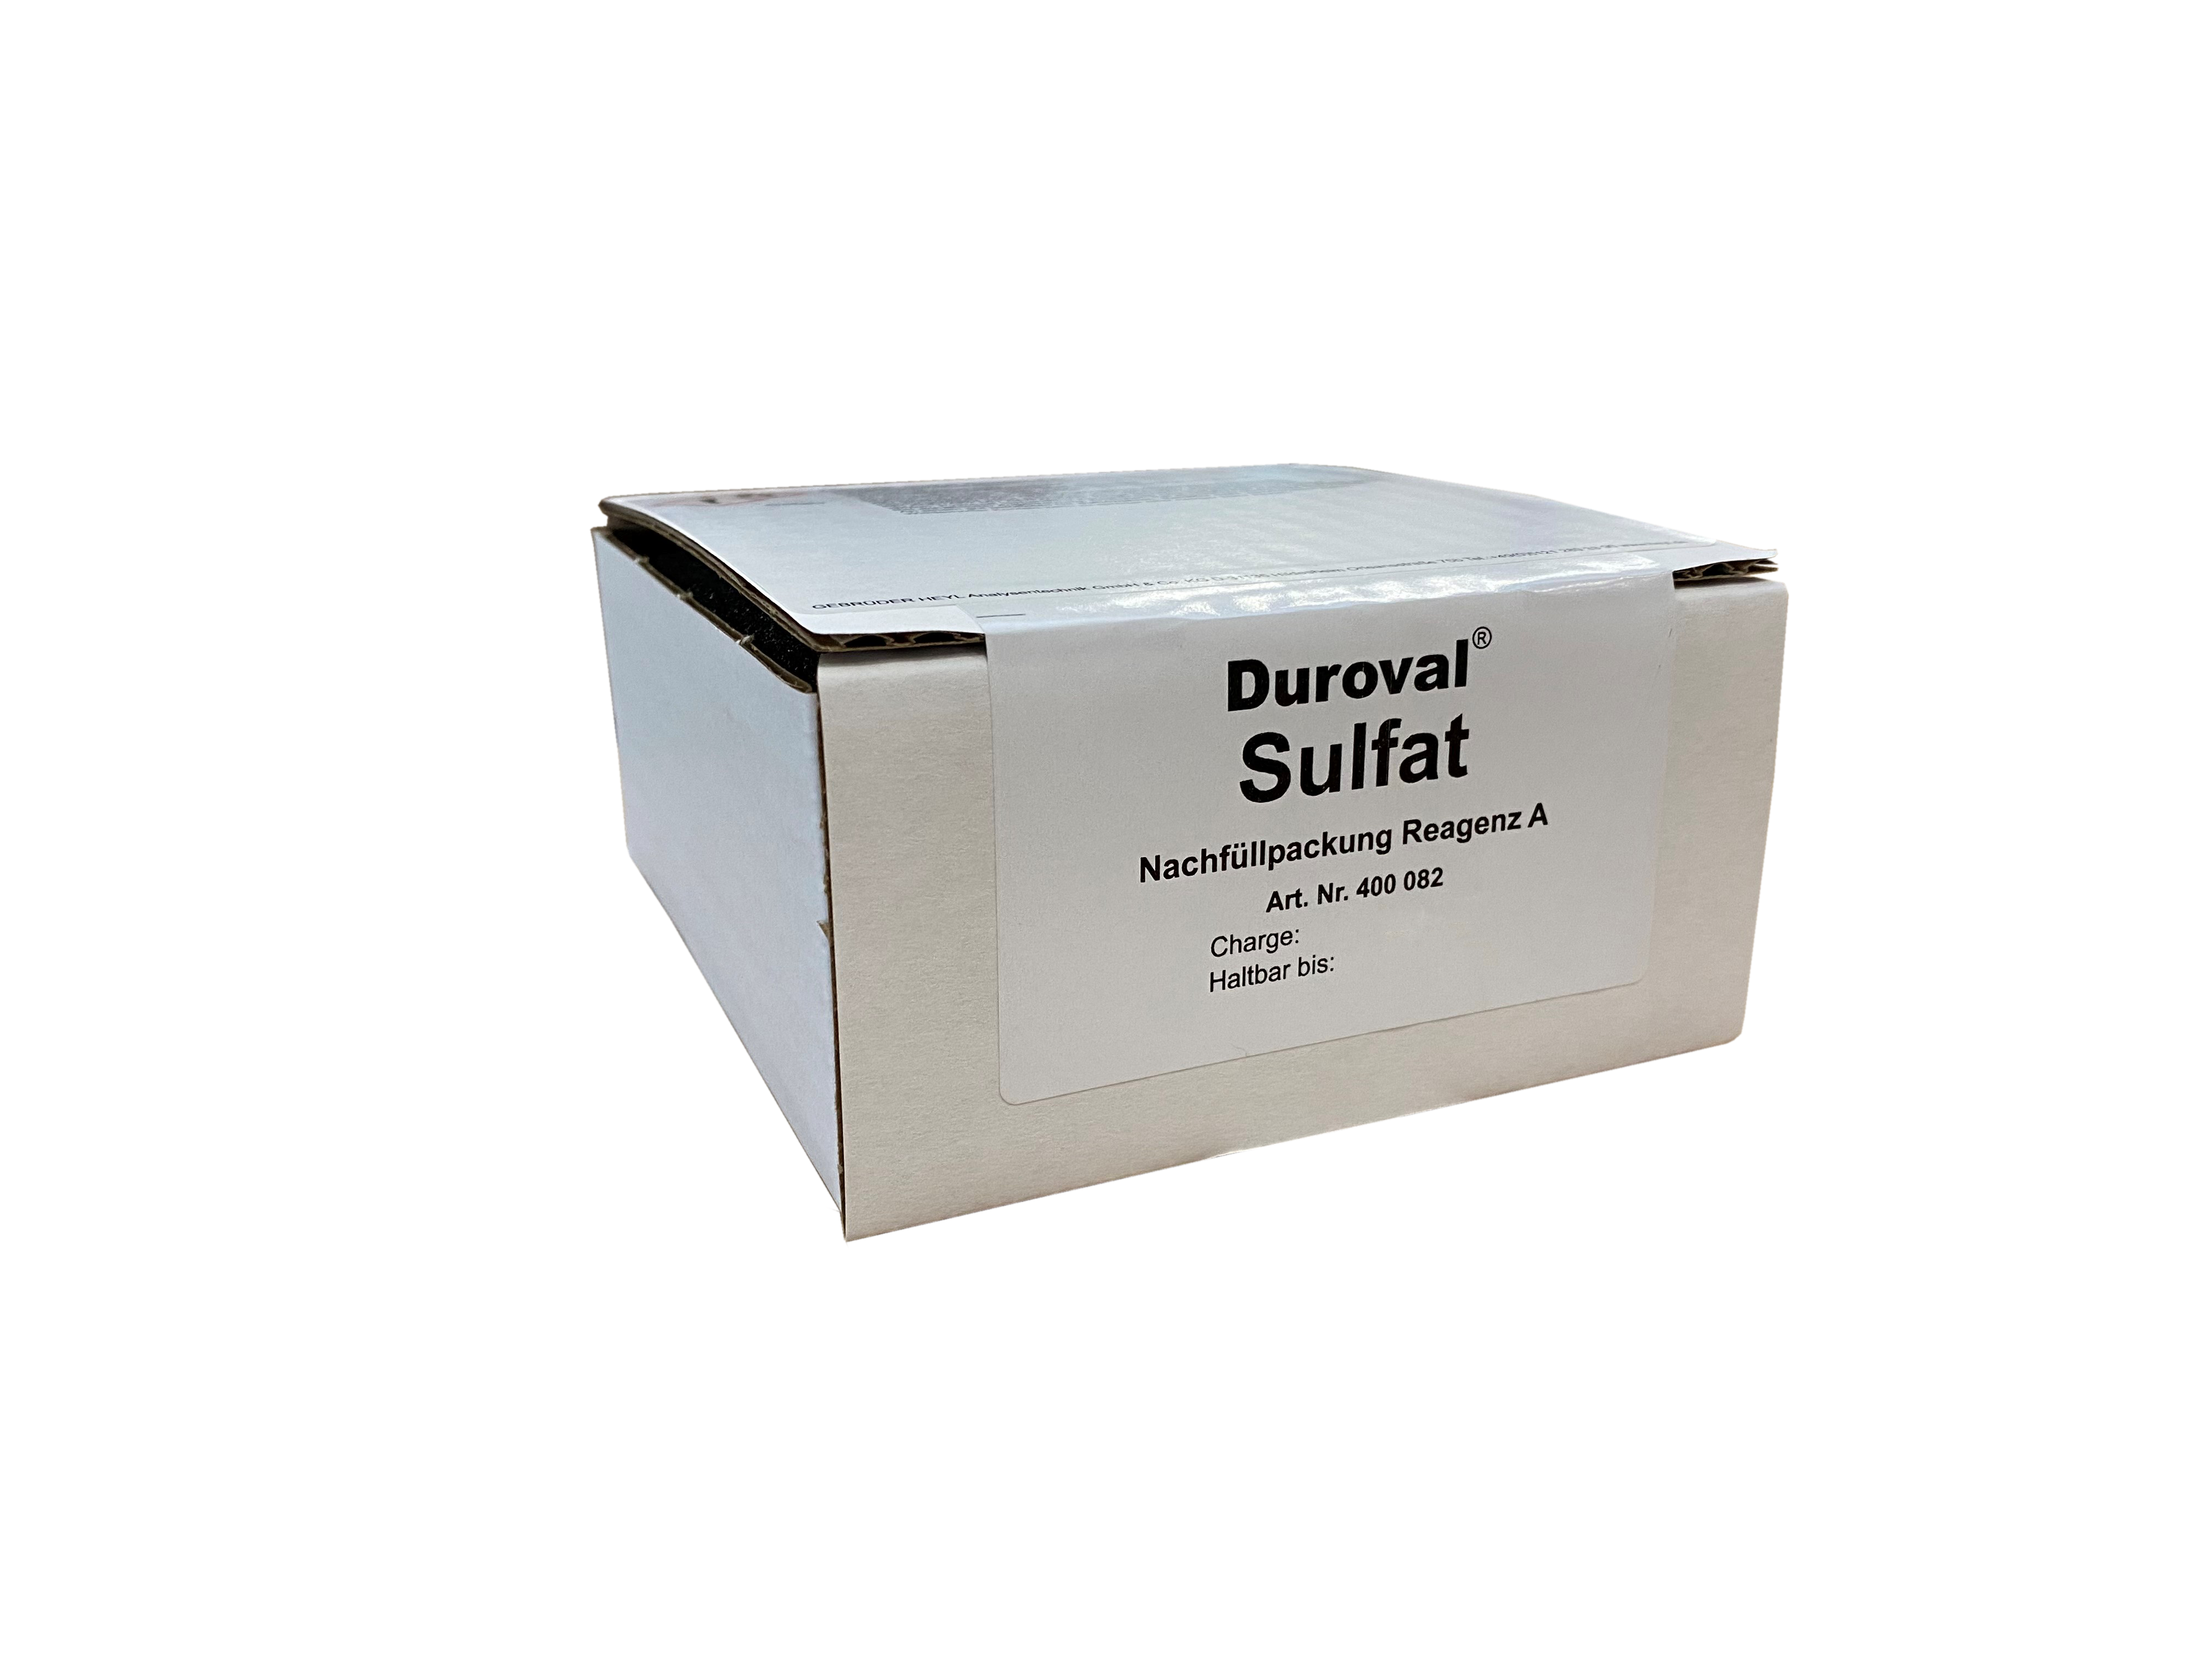 DUROVAL® Sulfat SO4 Reagenz A Nachfüllpackung